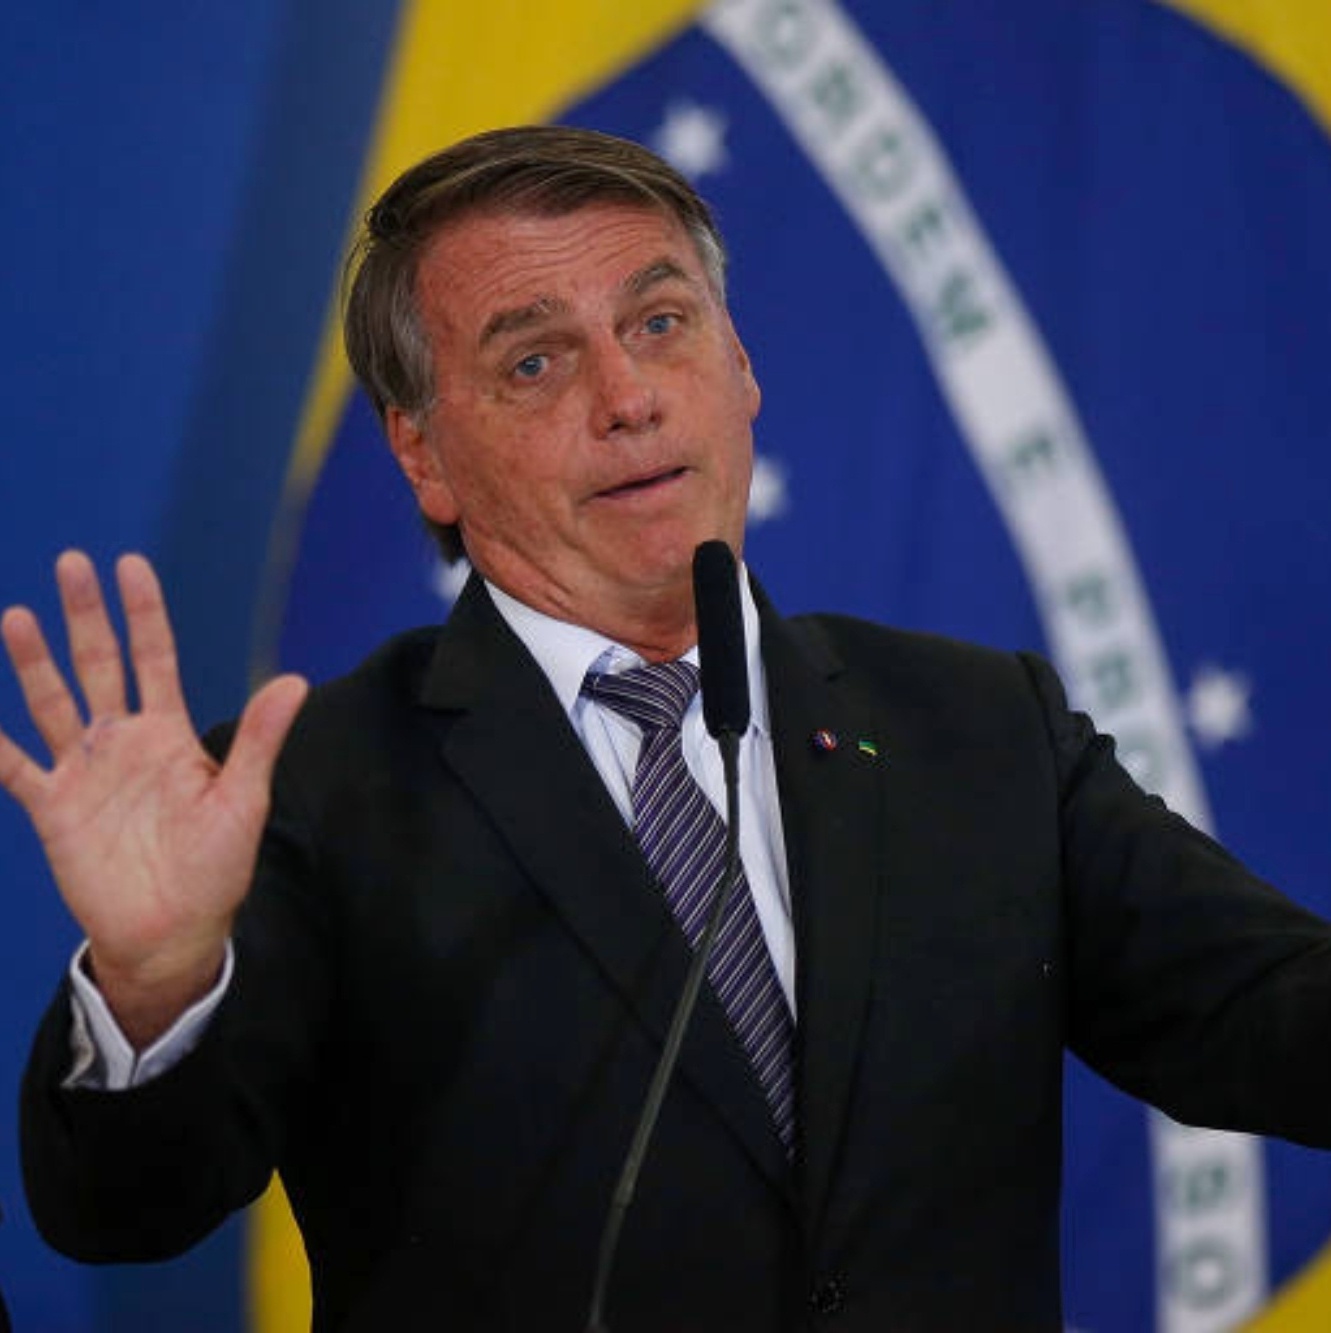 No xadrez da política, resta saber se Bolsonaro é rei ou peão